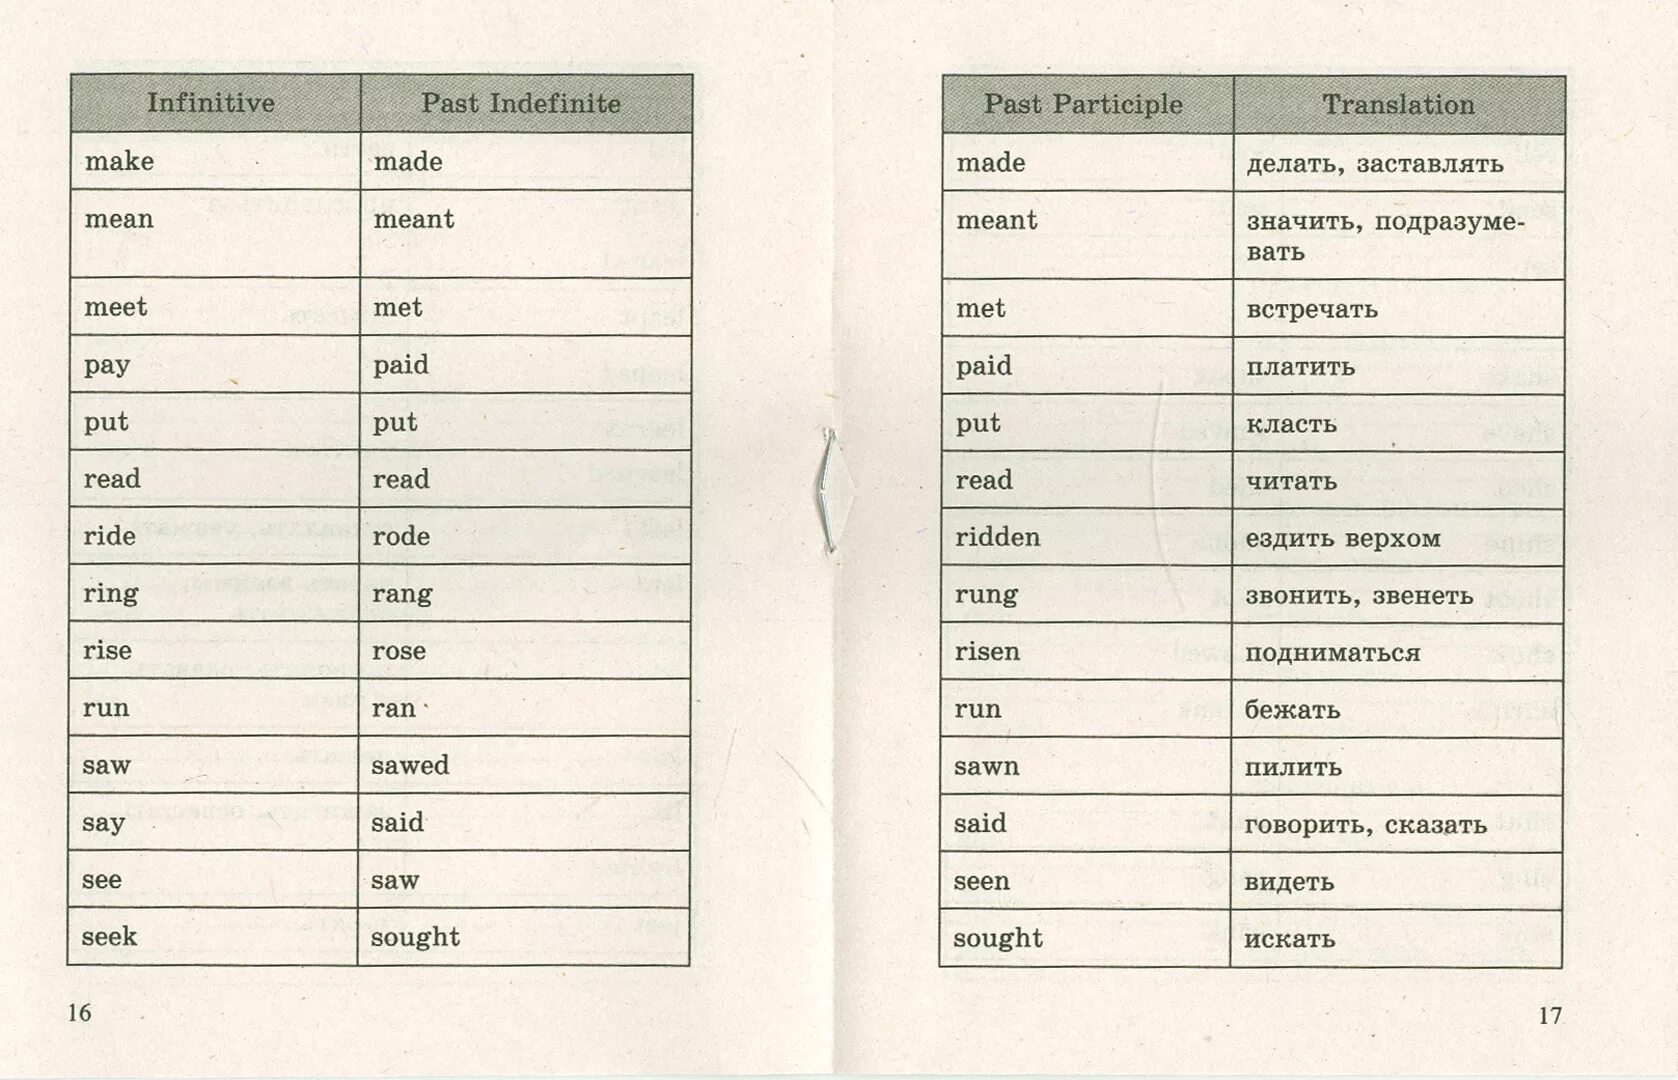 Irregular verbs упражнения. Задания по английскому языку 5 класс неправильные глаголы. Таблица неправильных глаголов упражнения. Неправильные глаголы таблица с пропусками. Третья форма глагола упражнения.